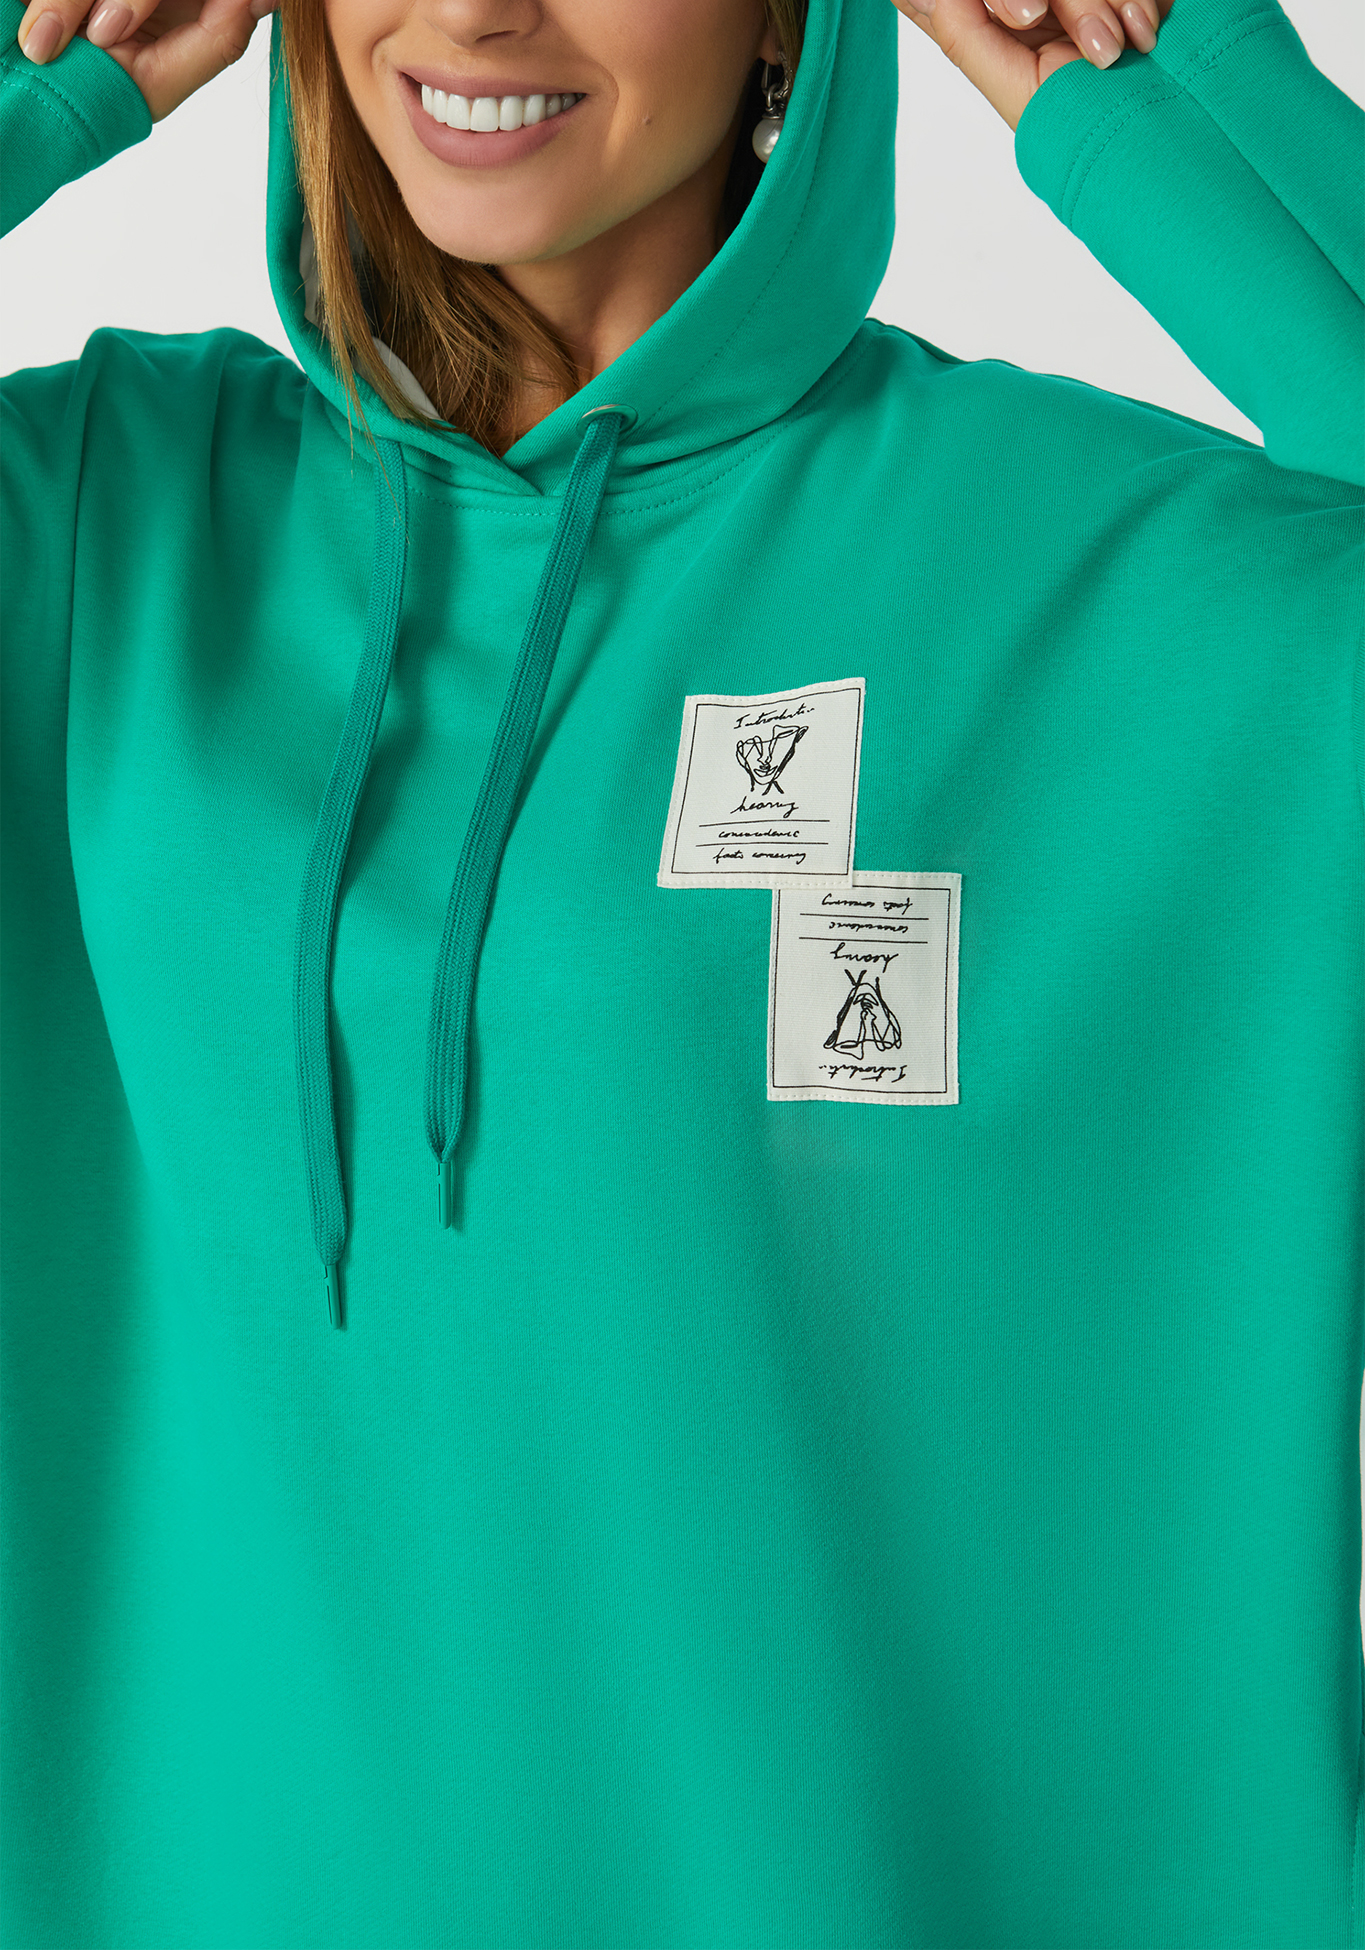 Свитшот с капюшоном и разрезами сзади Надежда Ангарская, размер 46, цвет зеленый - фото 4